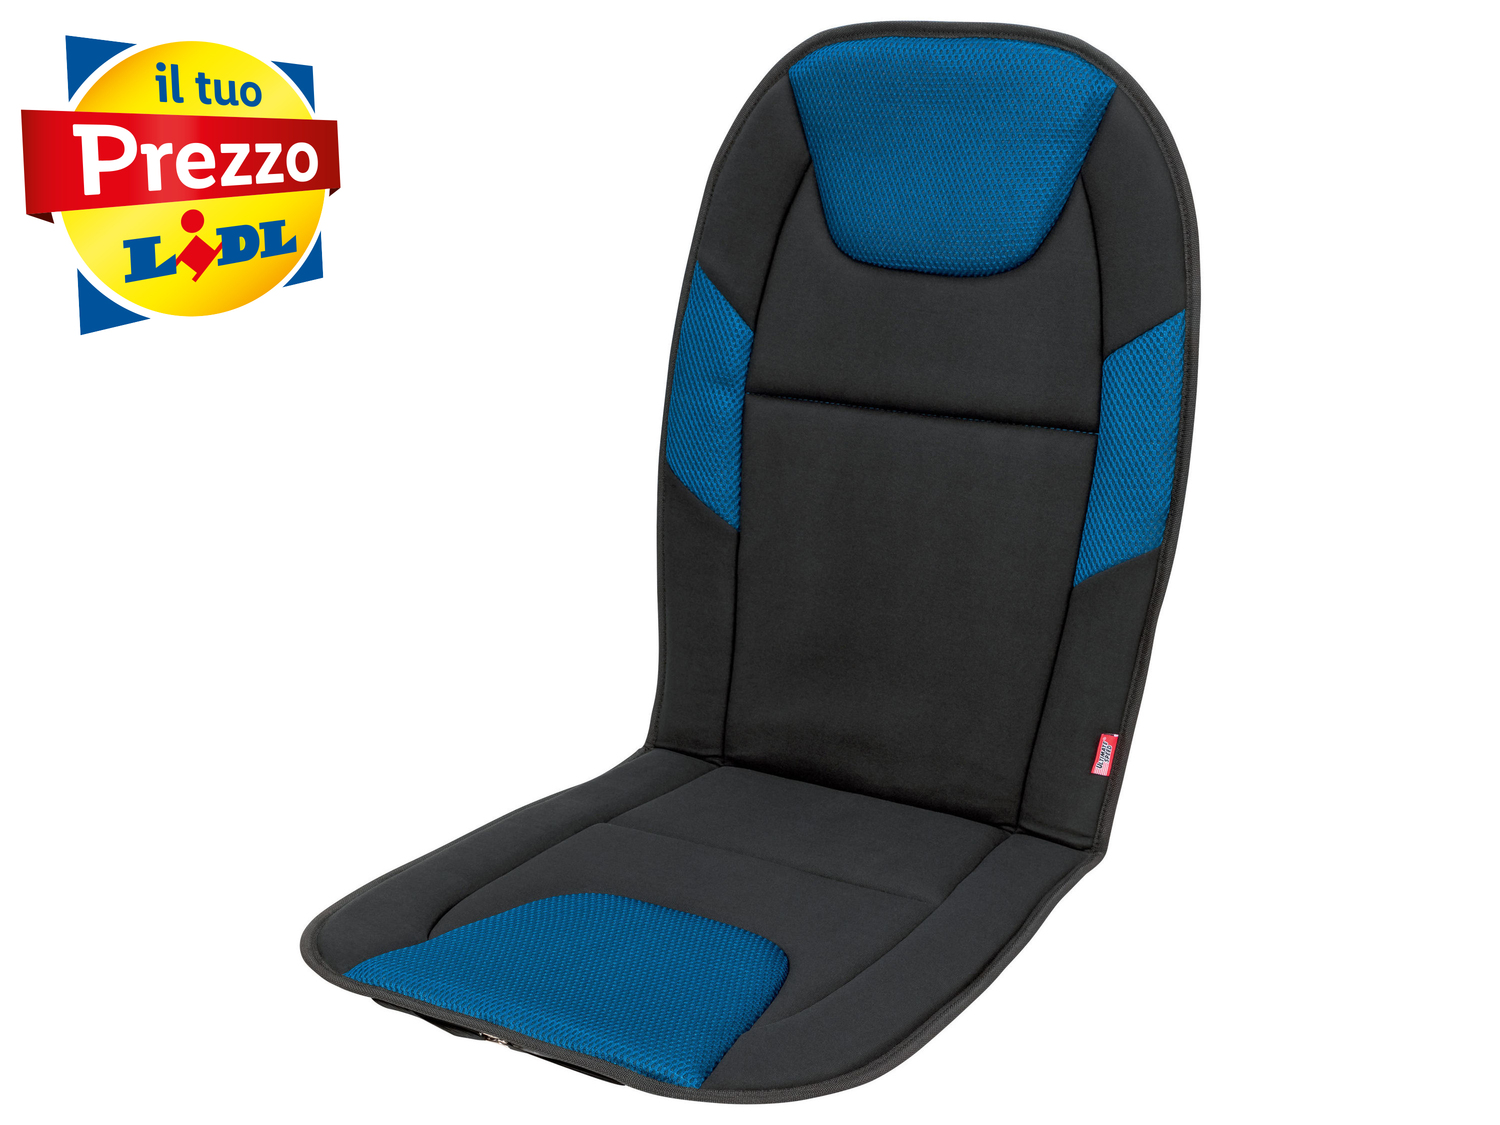 Coprisedile per auto Ultimate Speed, prezzo 4.99 € 
- Adatto anche per sedili ...